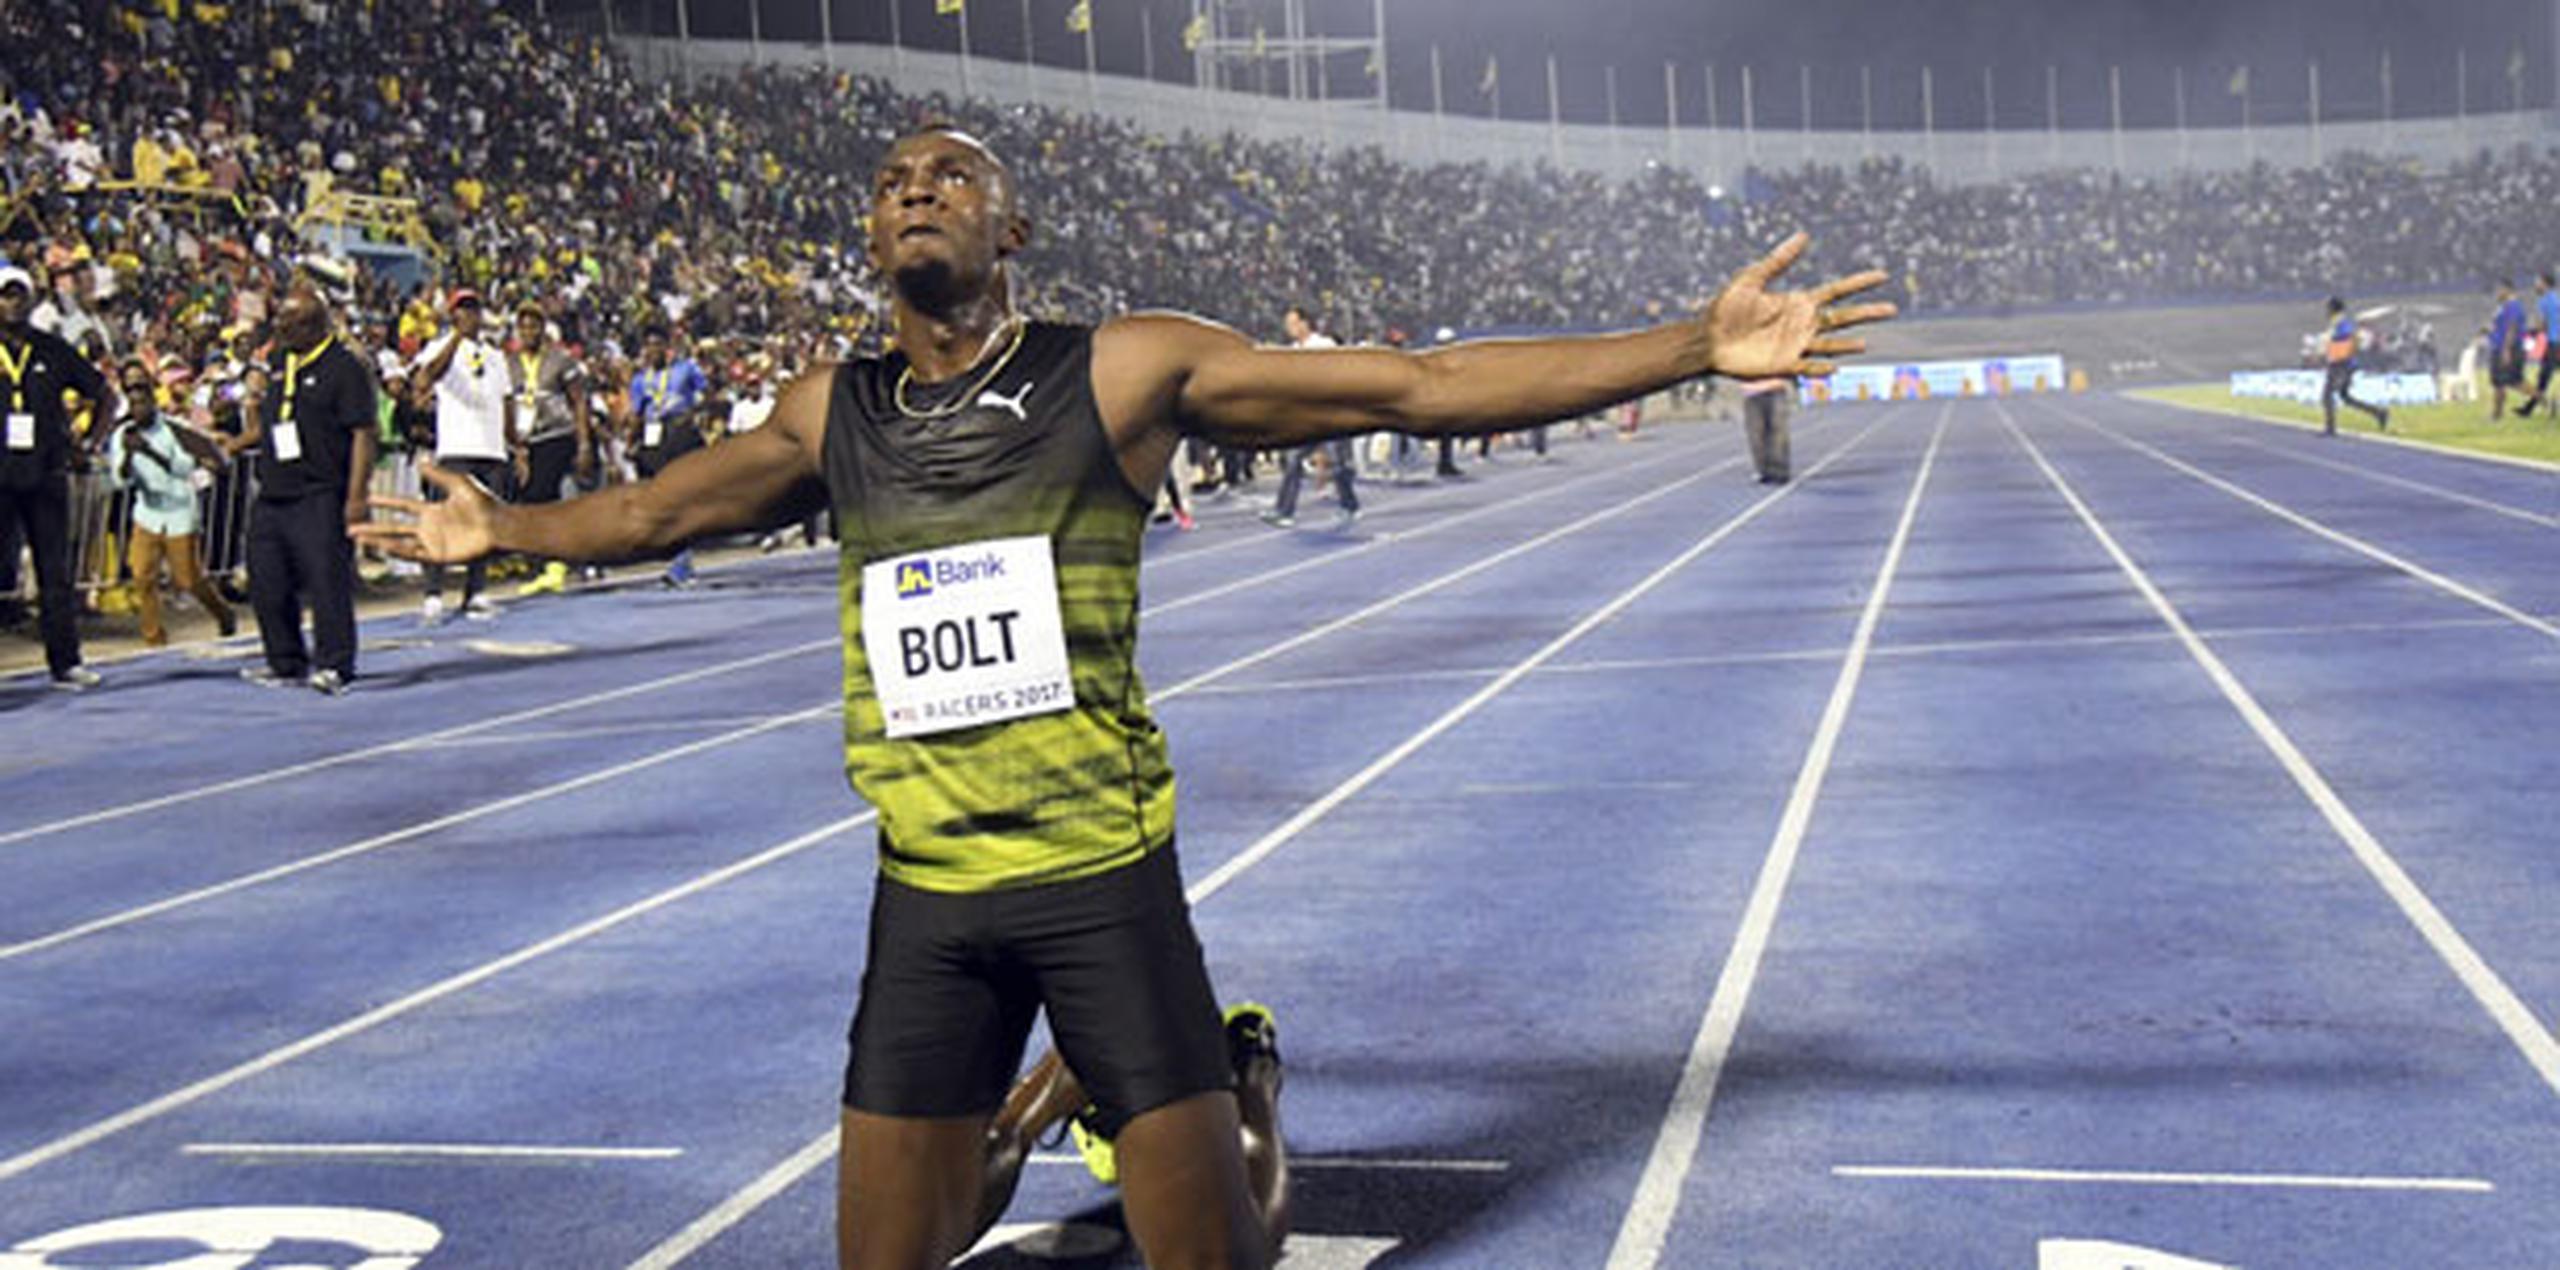 Bolt ha sido el amo y señor de las pruebas de velocidad durante nueve años, monopolizando todos los grandes títulos. (Archivo)